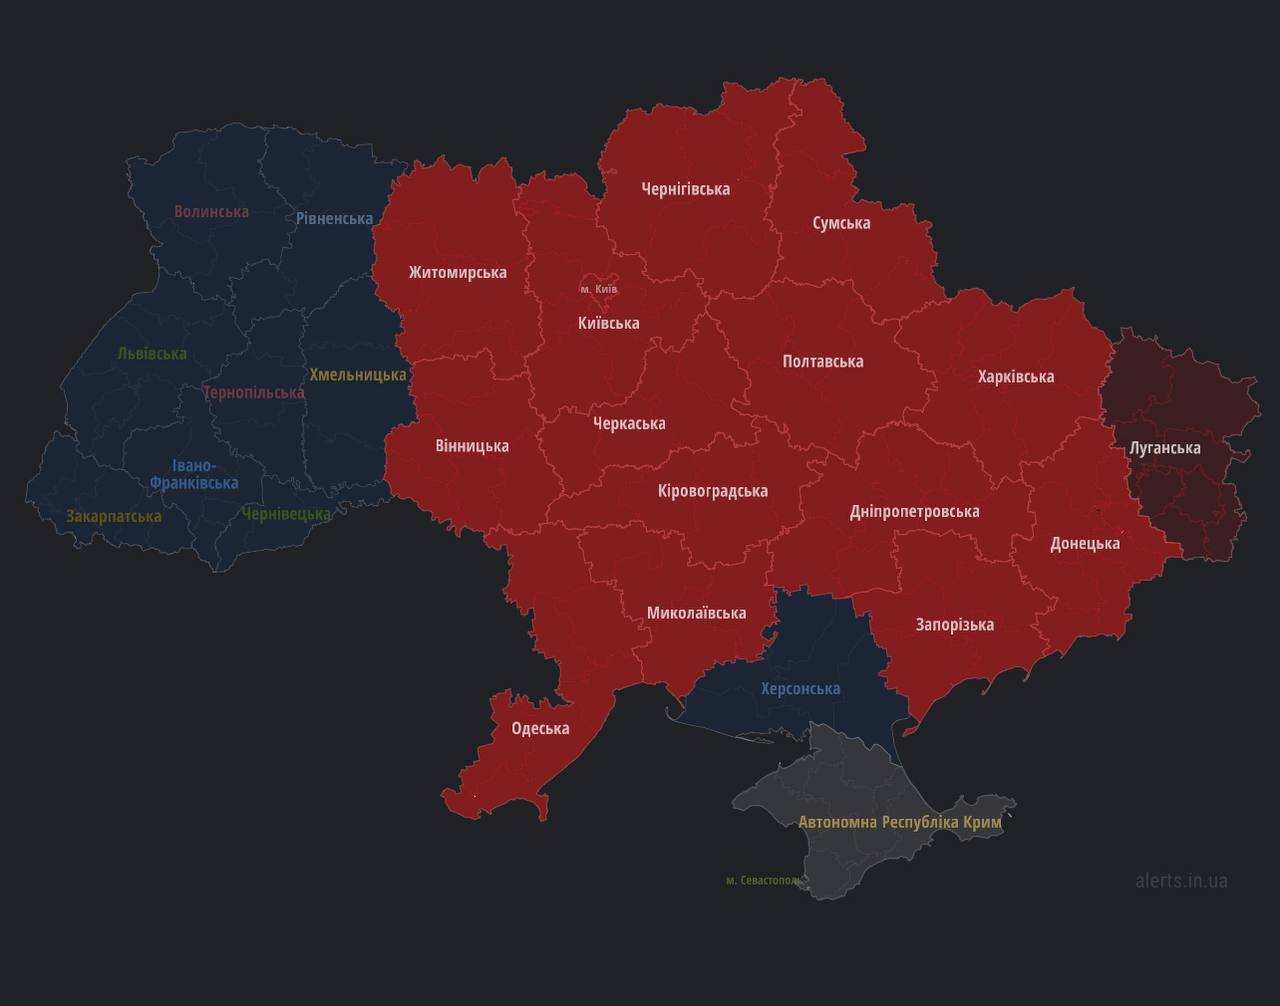 Карта тревог в украине сейчас. Карта Юго Востока Украины. Центральная Украина области. Карта воздушных тревог в Украине. Карта воздушных тревог на Украине сейчас.